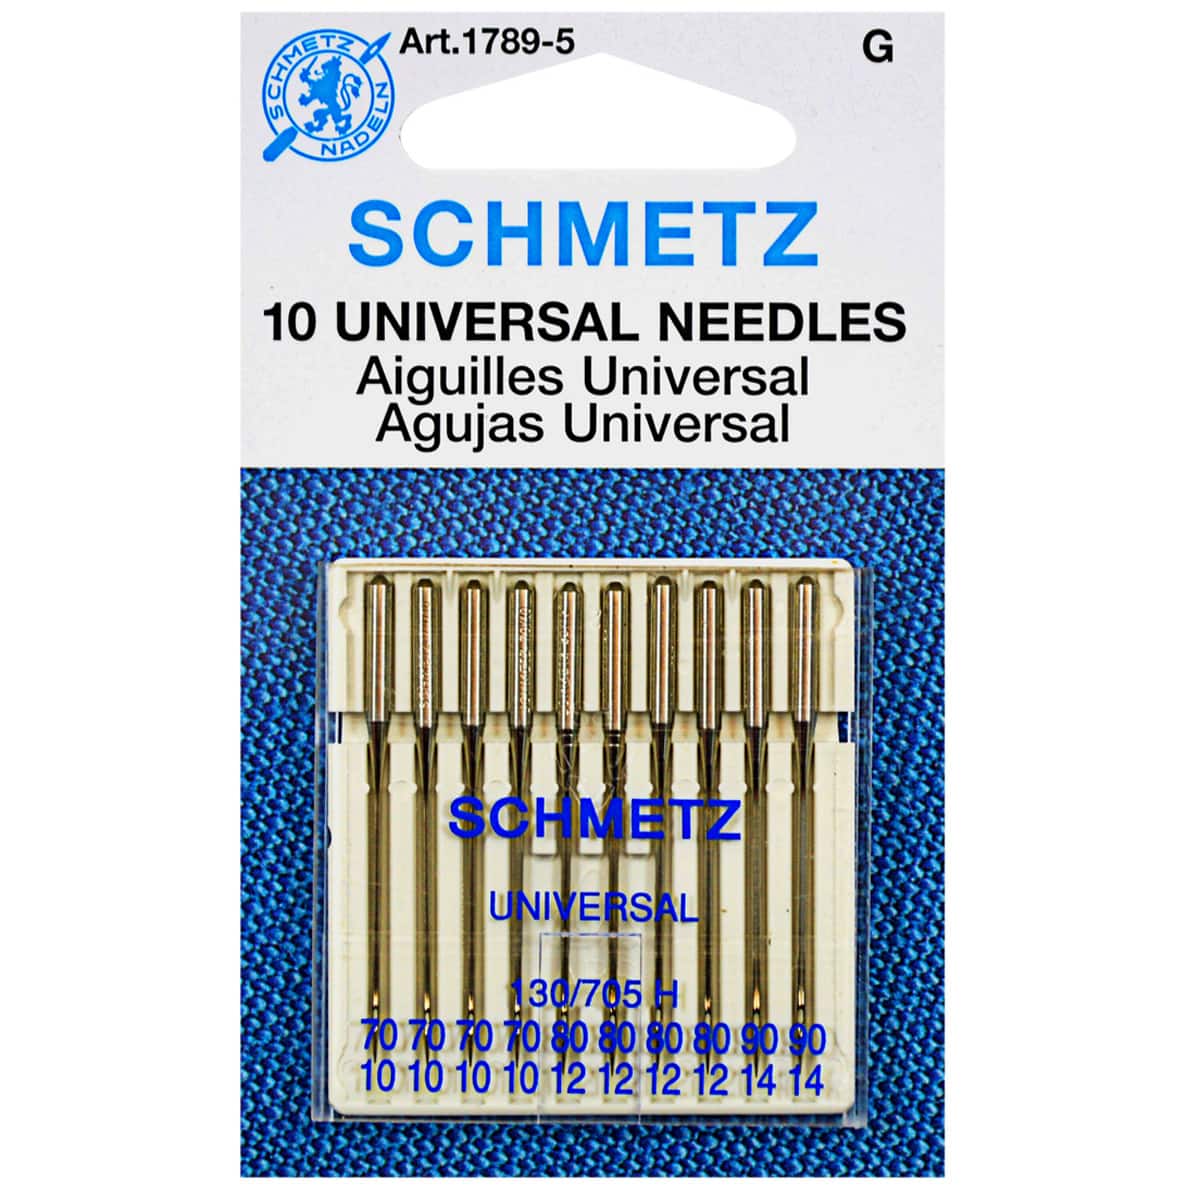 Schmetz Universal Sewing Machine Needles Assorted 10 Pack 70/10, 80/12, 90/14  Schmetz Needles for Your Sewing Machine 